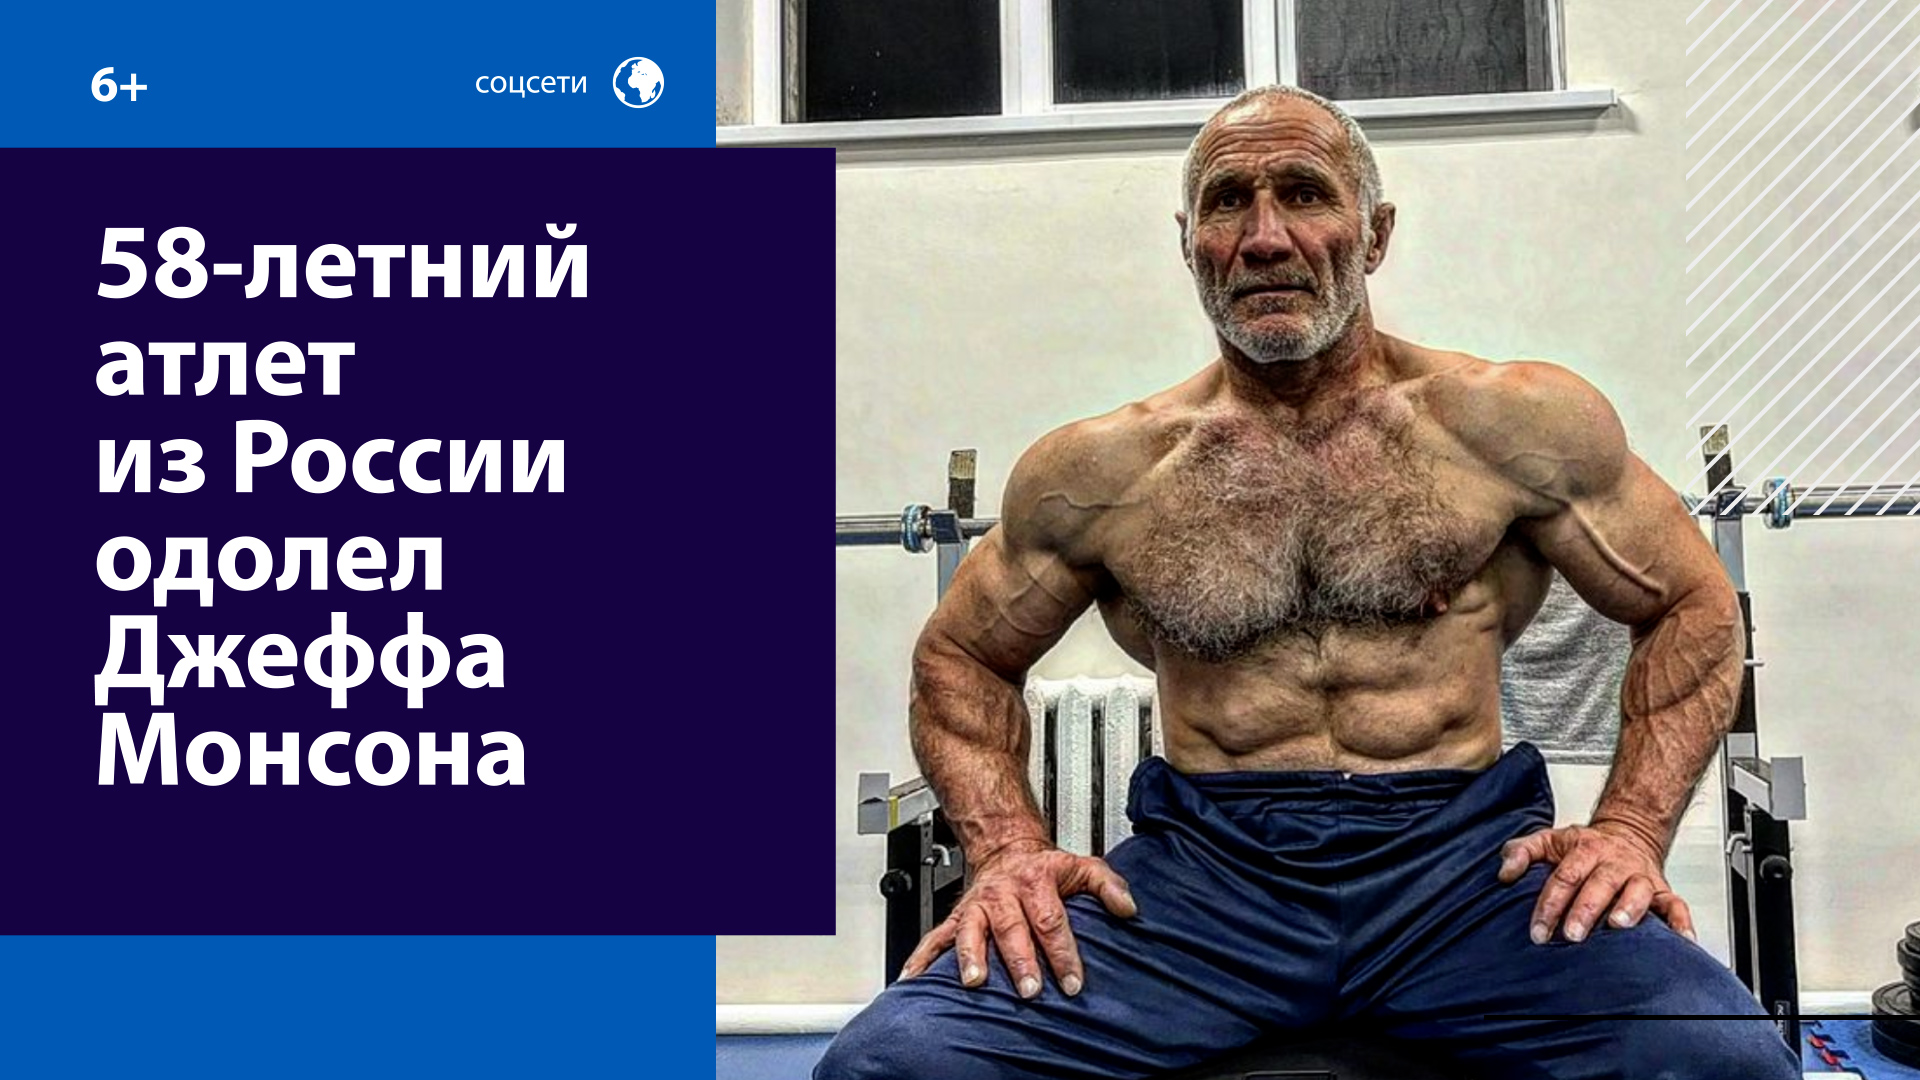 Как живёт и побеждает Ким Схашок, "самый сильный дед в мире"? — Москва FM